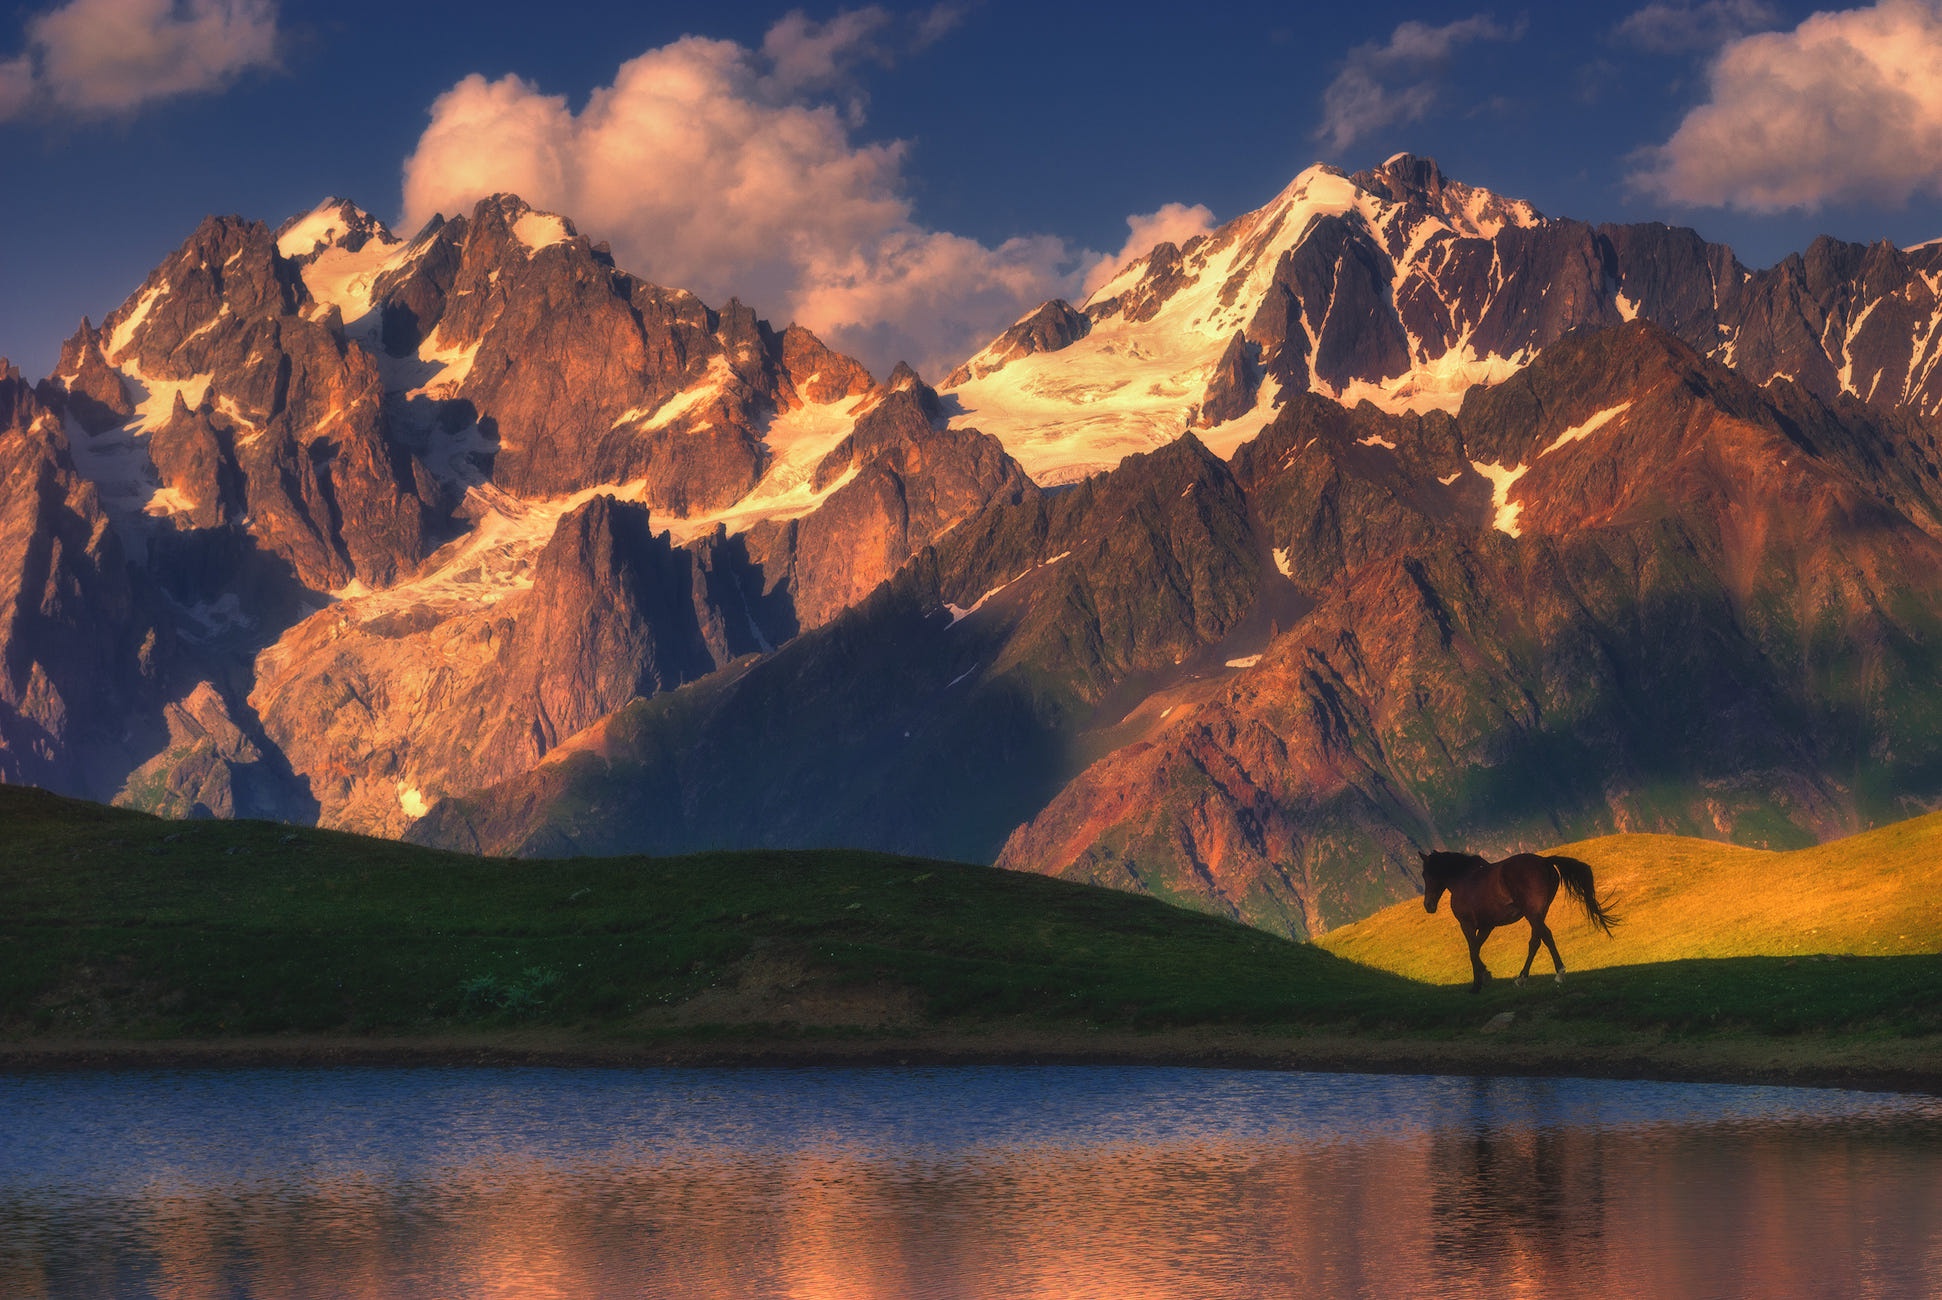 лошадь в горах кавказа